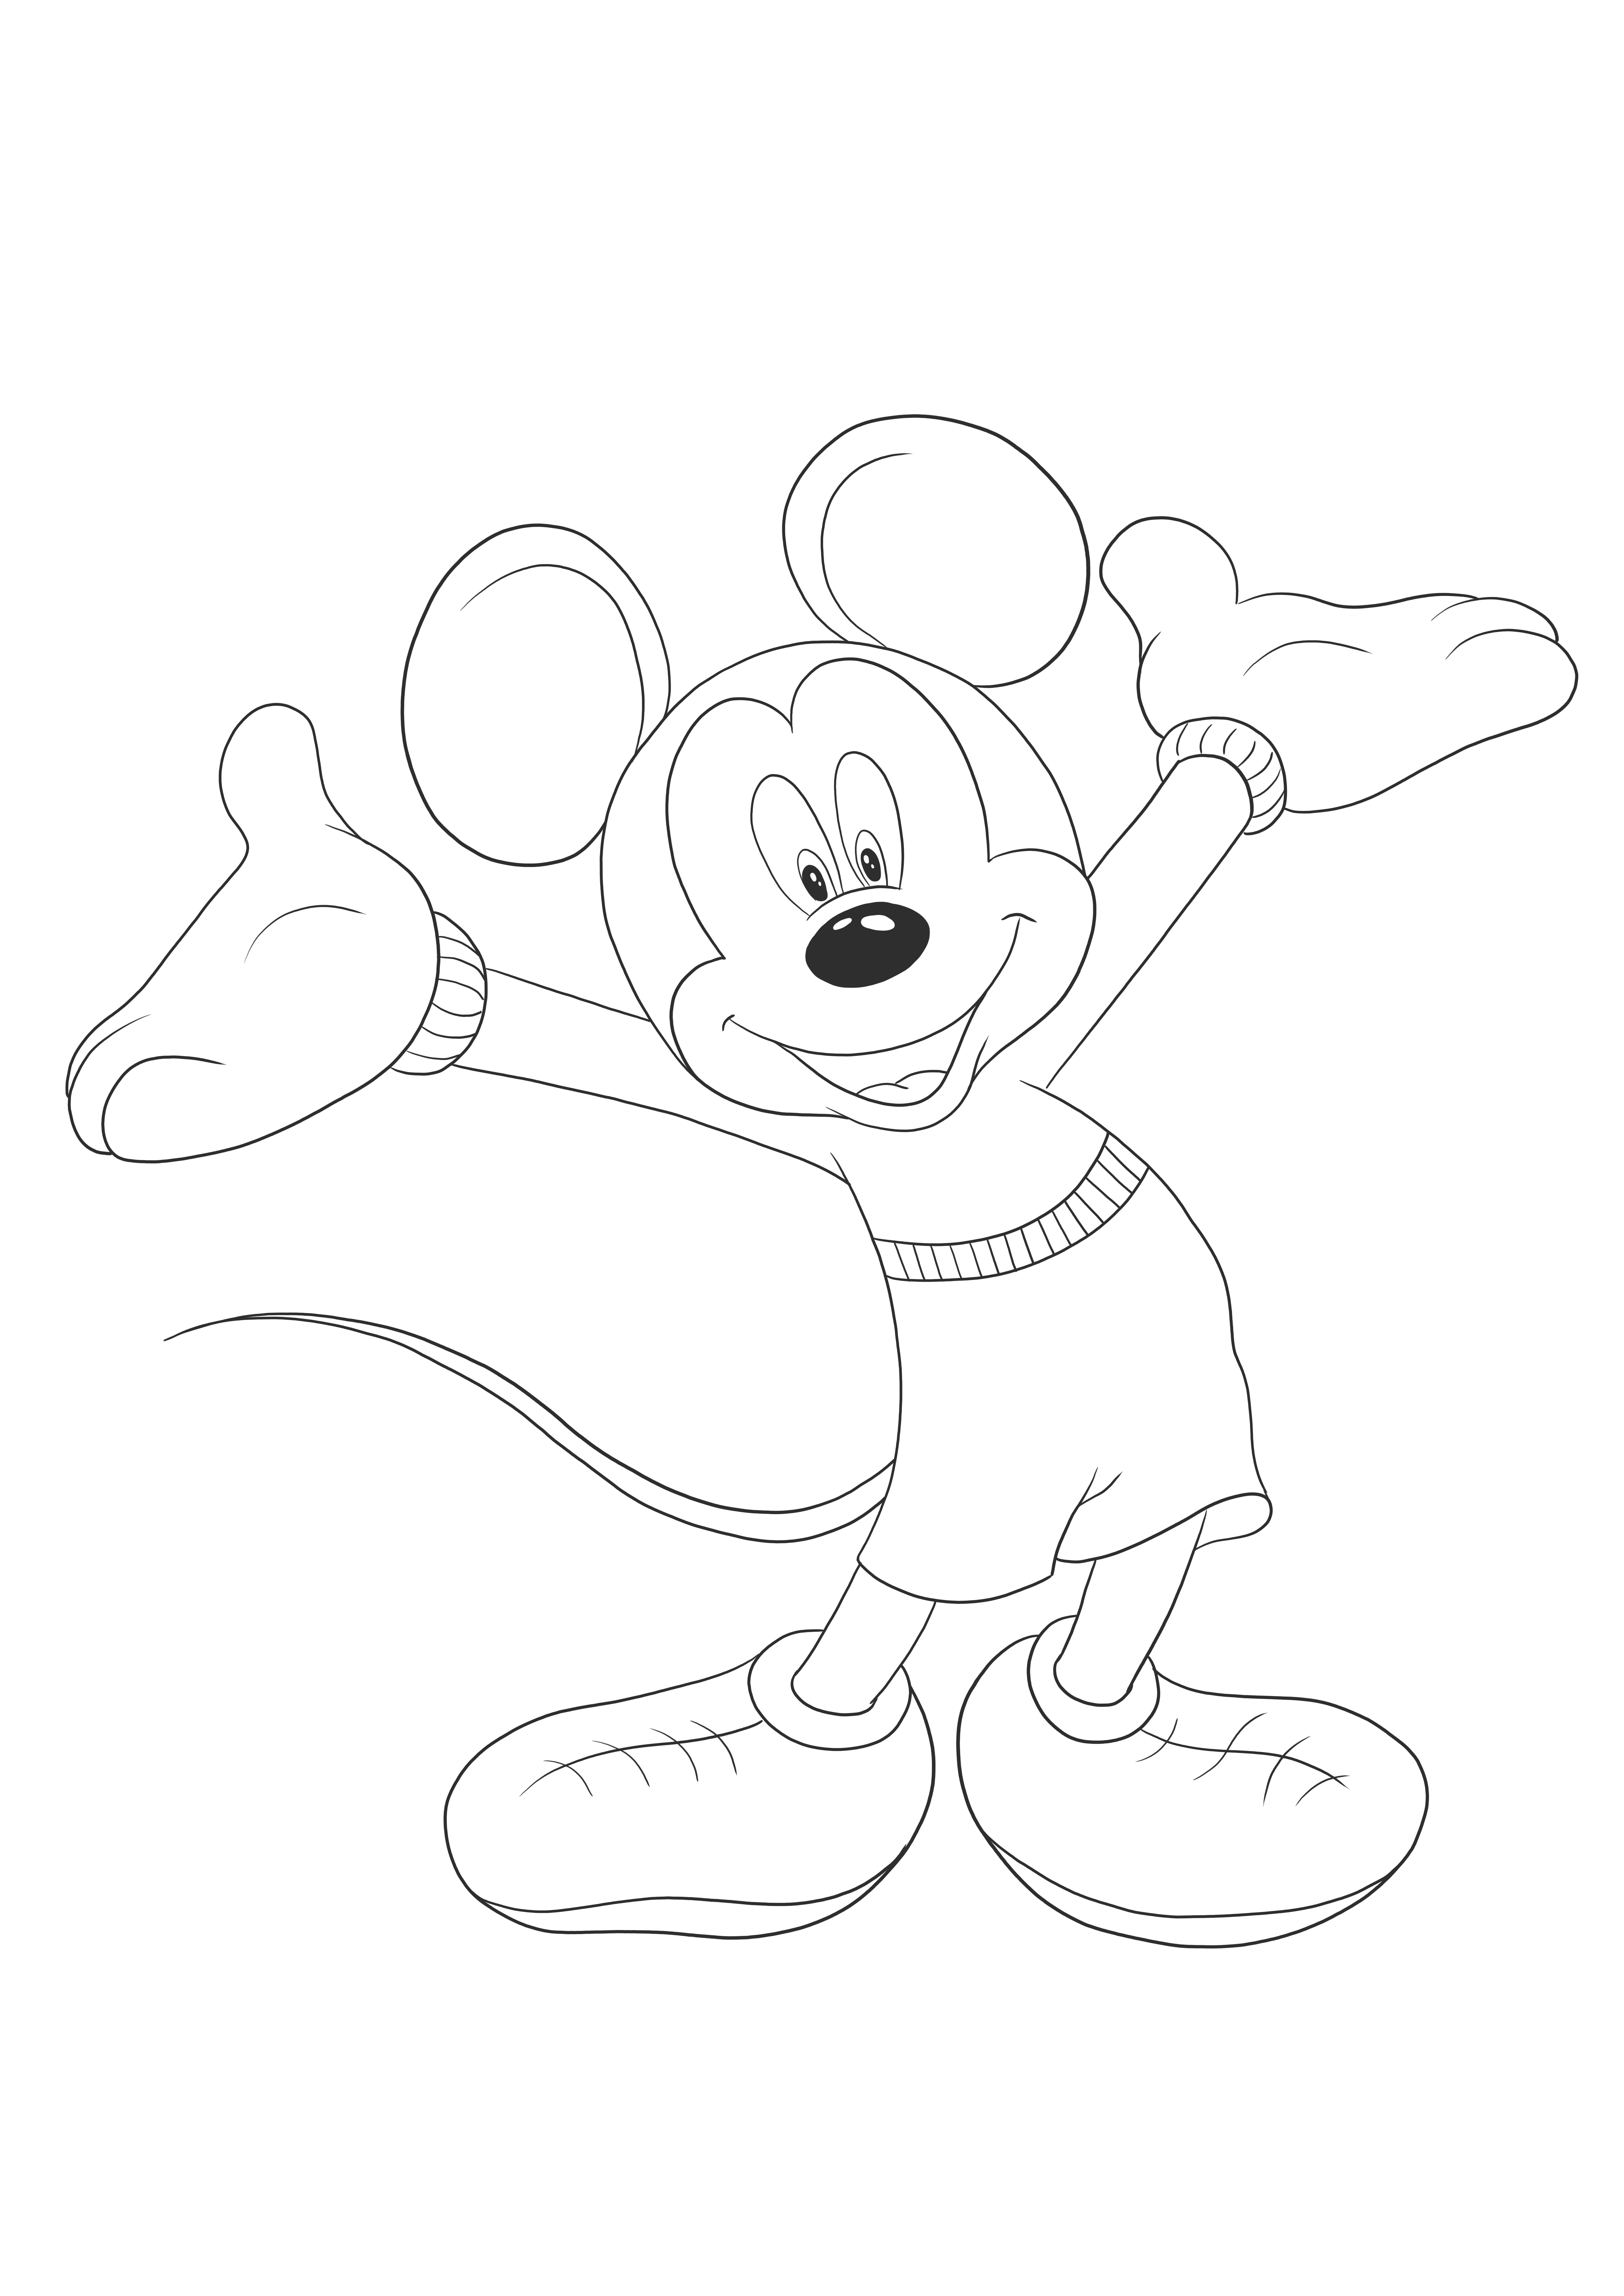 Happy Mikey Mouse odottaa värittömästi tulostettavaa